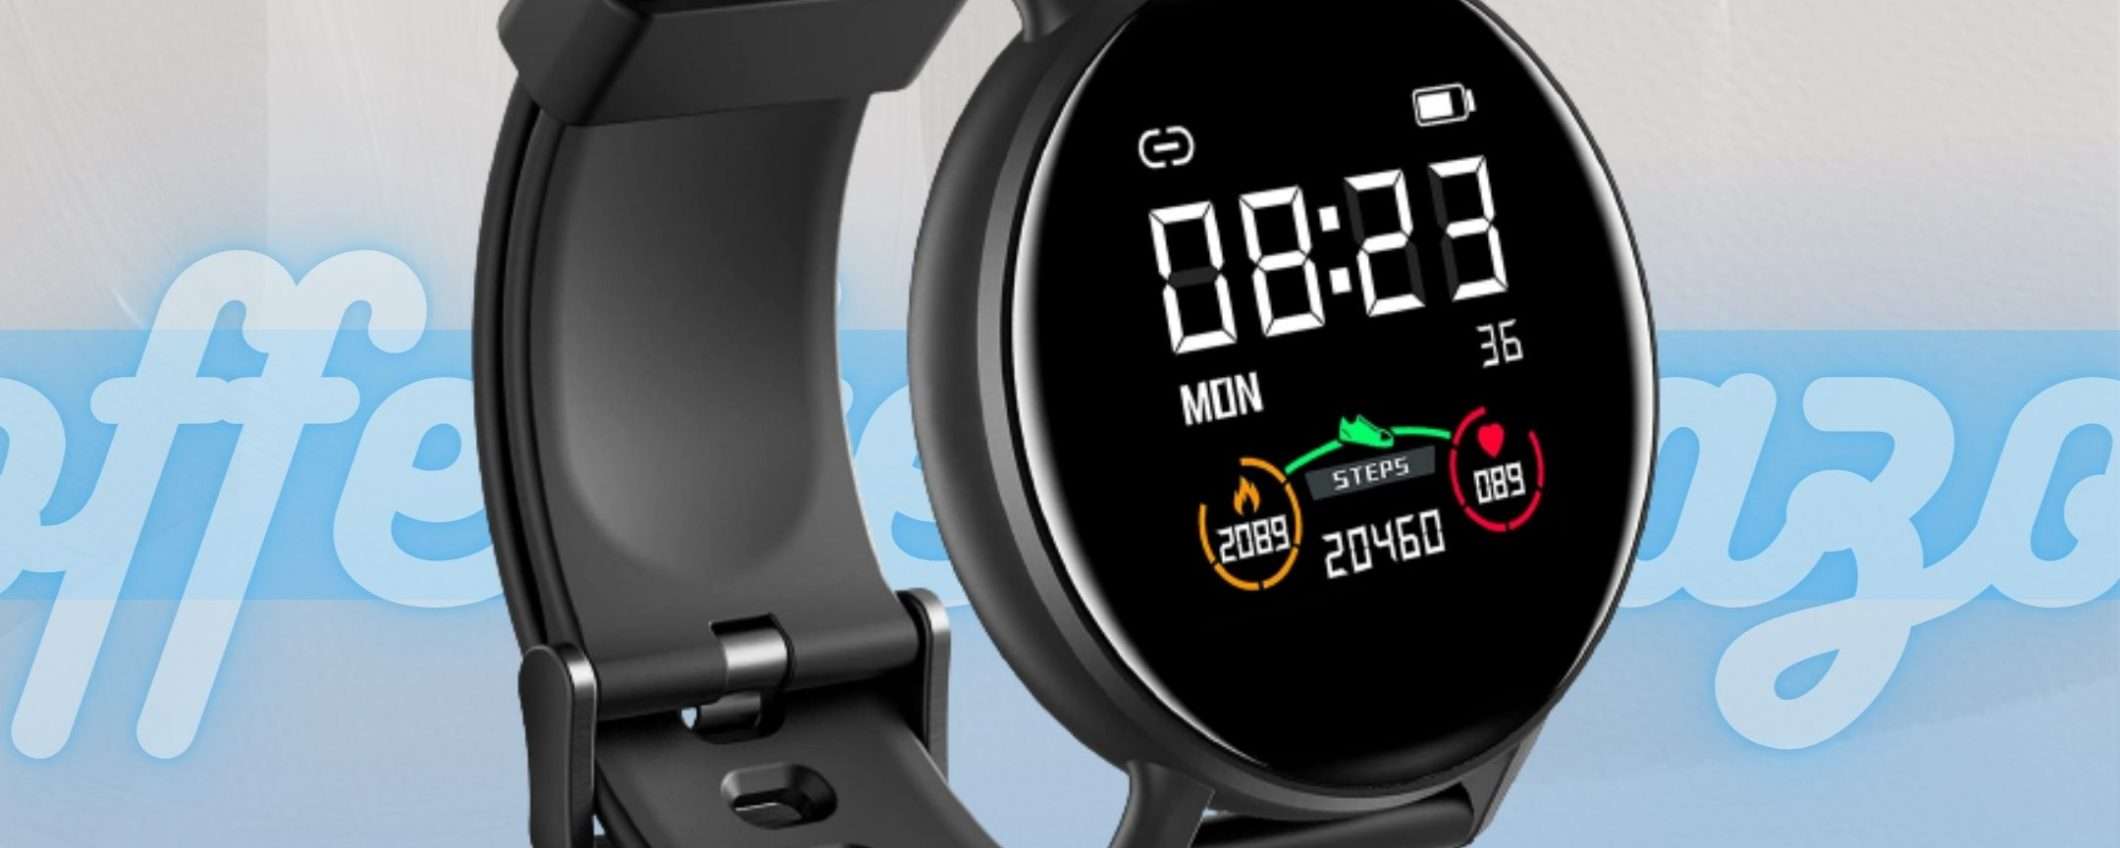 Smartwatch ultra moderno a soli 30€: un'offerta da non perdere